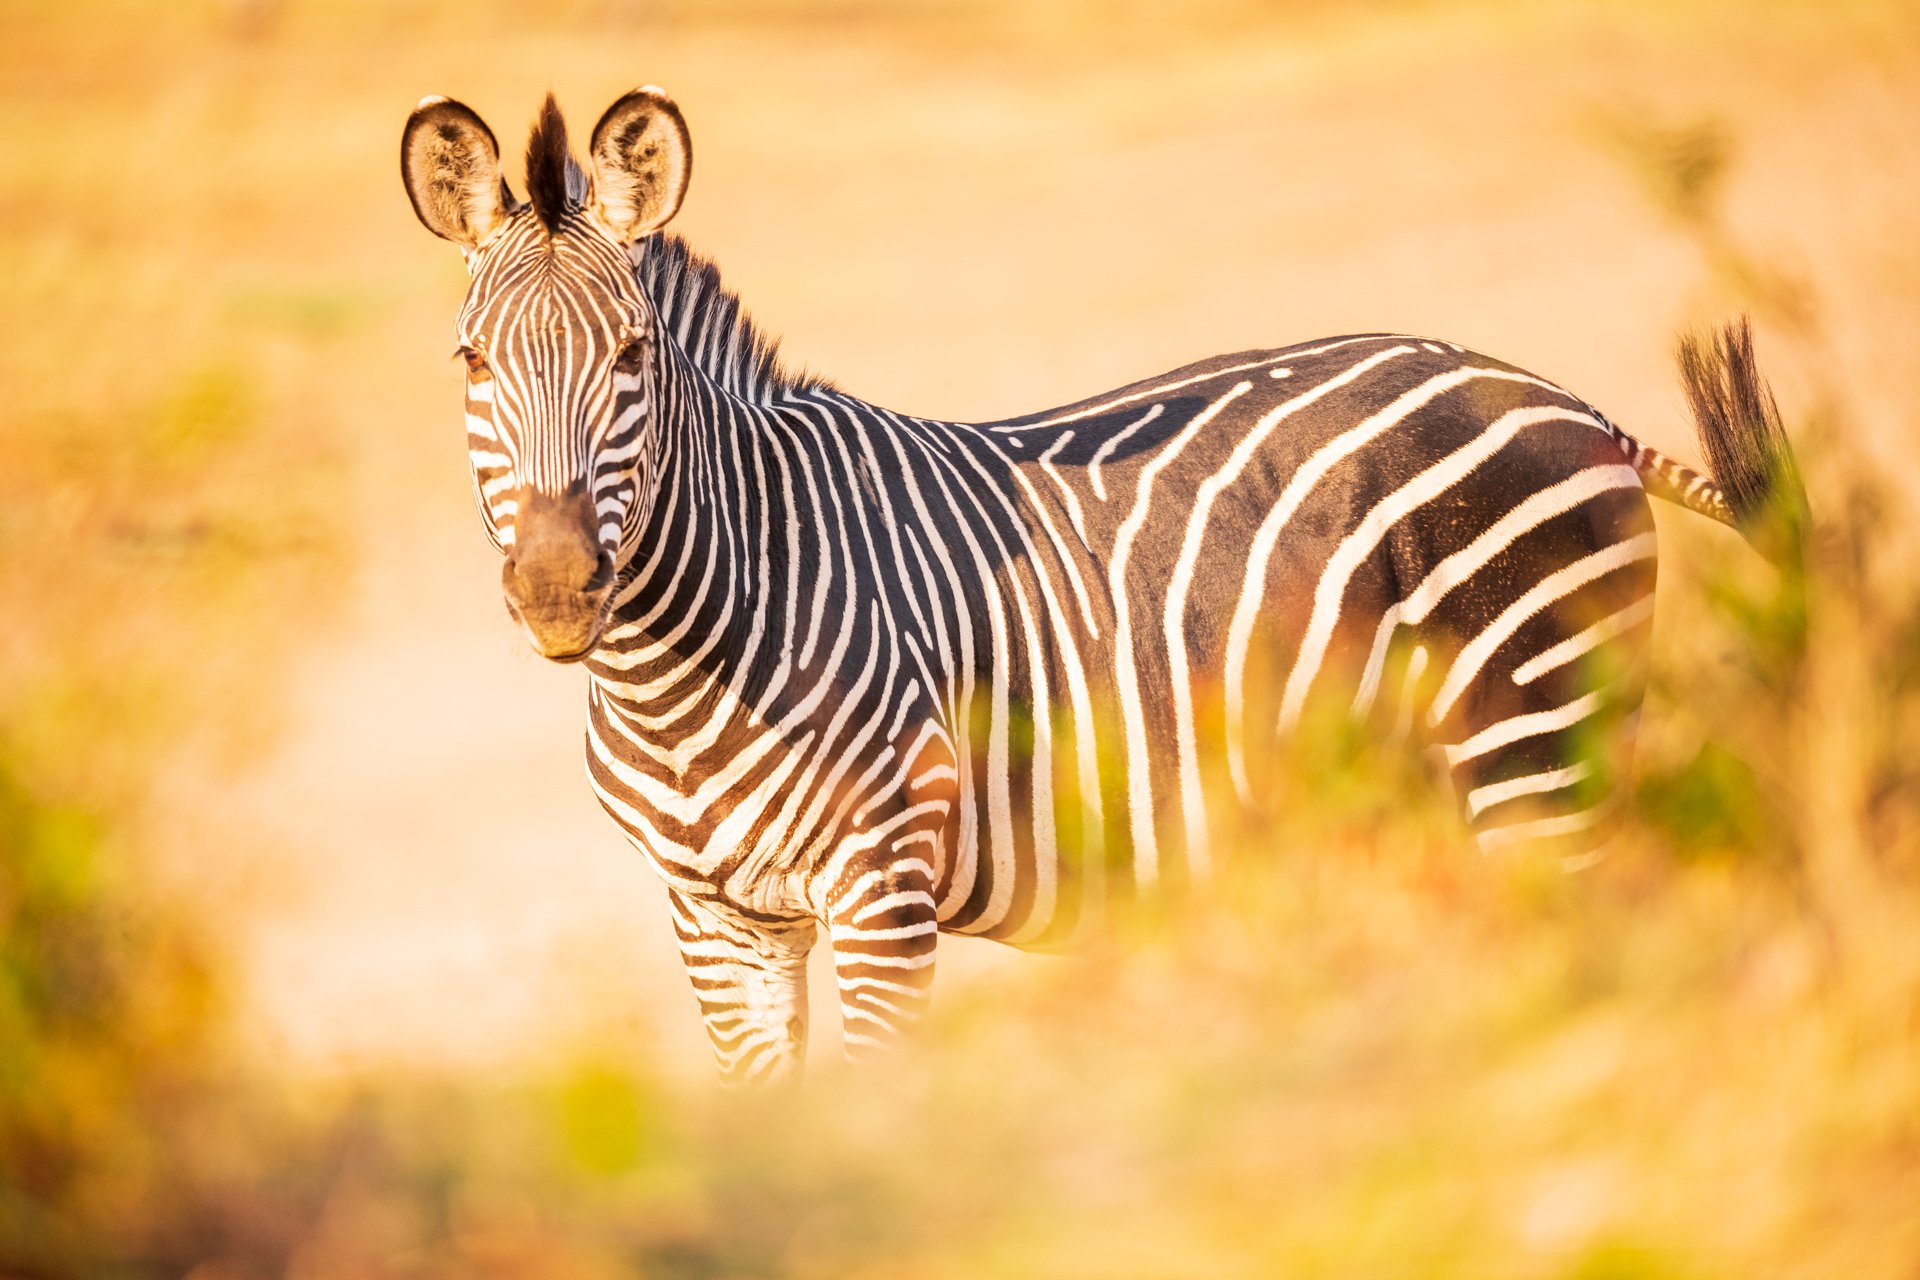 aweb2-zebra-mammals.jpg